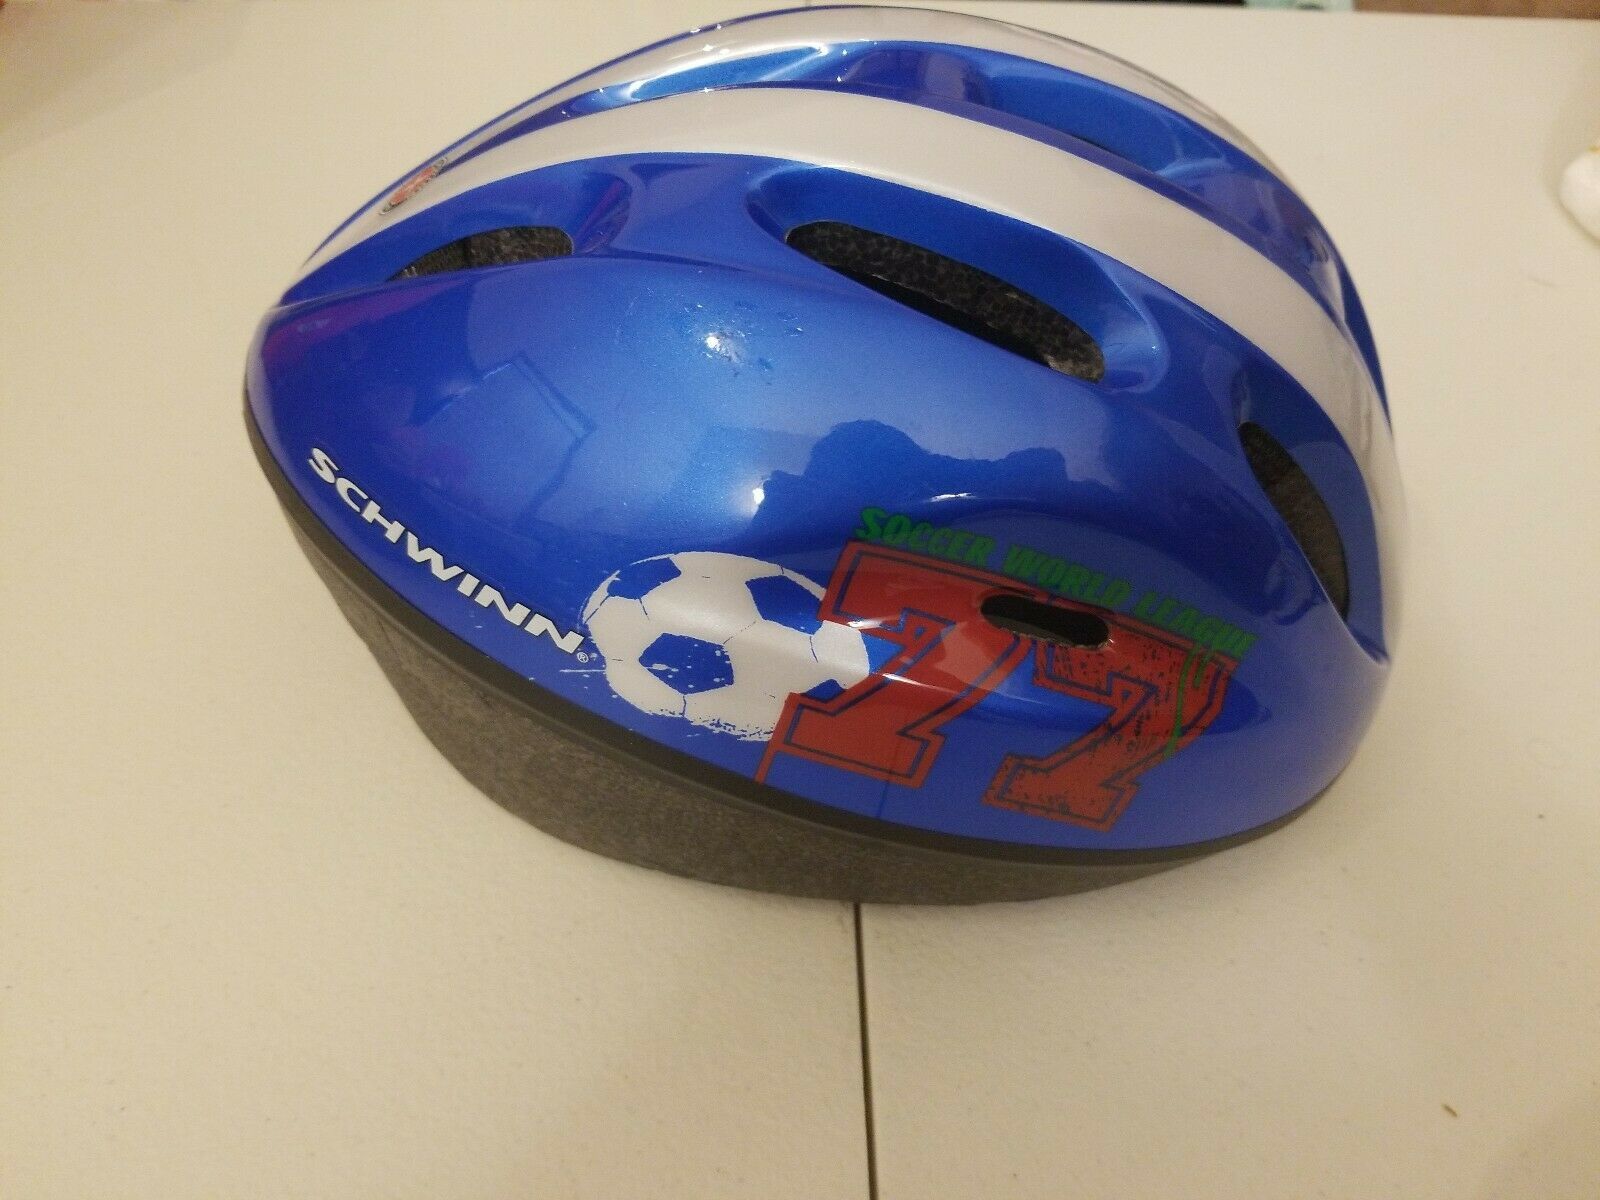 schwinn pathway adult bicycle helmet